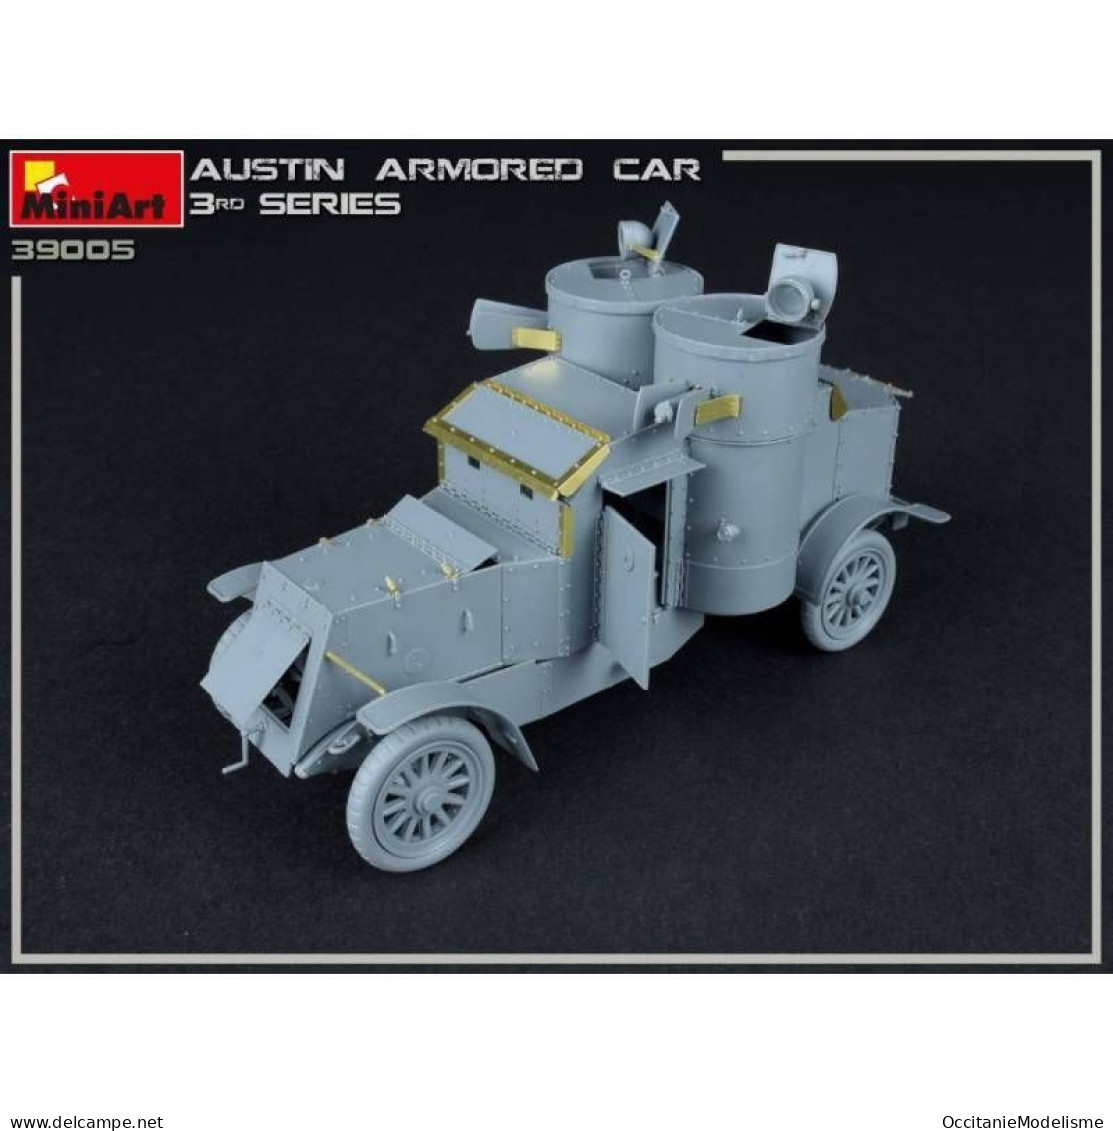 Miniart - AUSTIN ARMOURED CAR 3rd Series Maquette Kit Plastique Réf. 39005 Neuf NBO 1/35 - Militaire Voertuigen